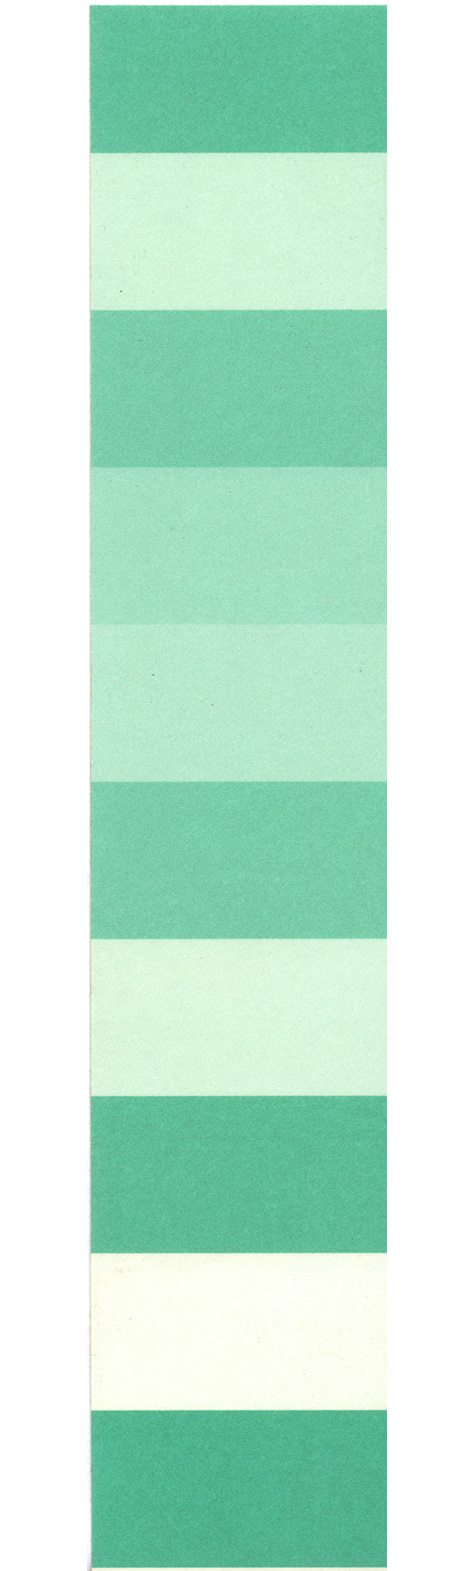 gbc Copridorso adesivo VERDE, 20x4 cm Copridorso in carta colorata. fondo colorato..